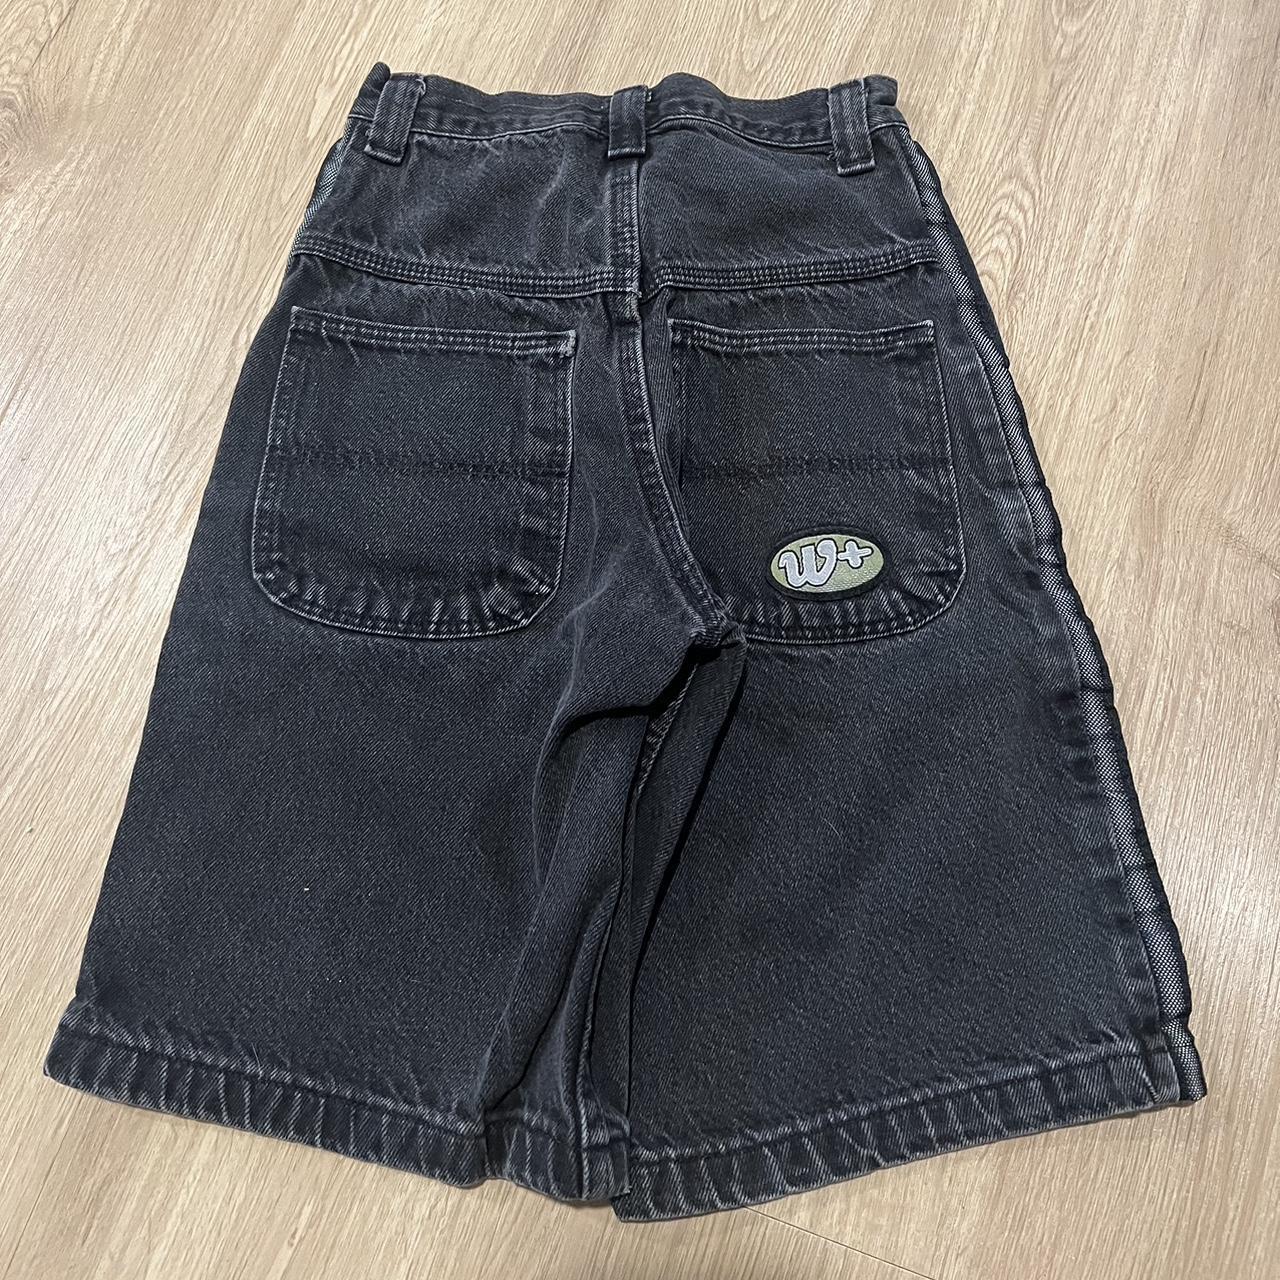 Vintage Jnco wrangler + shorts baggy usa 90s... - Depop